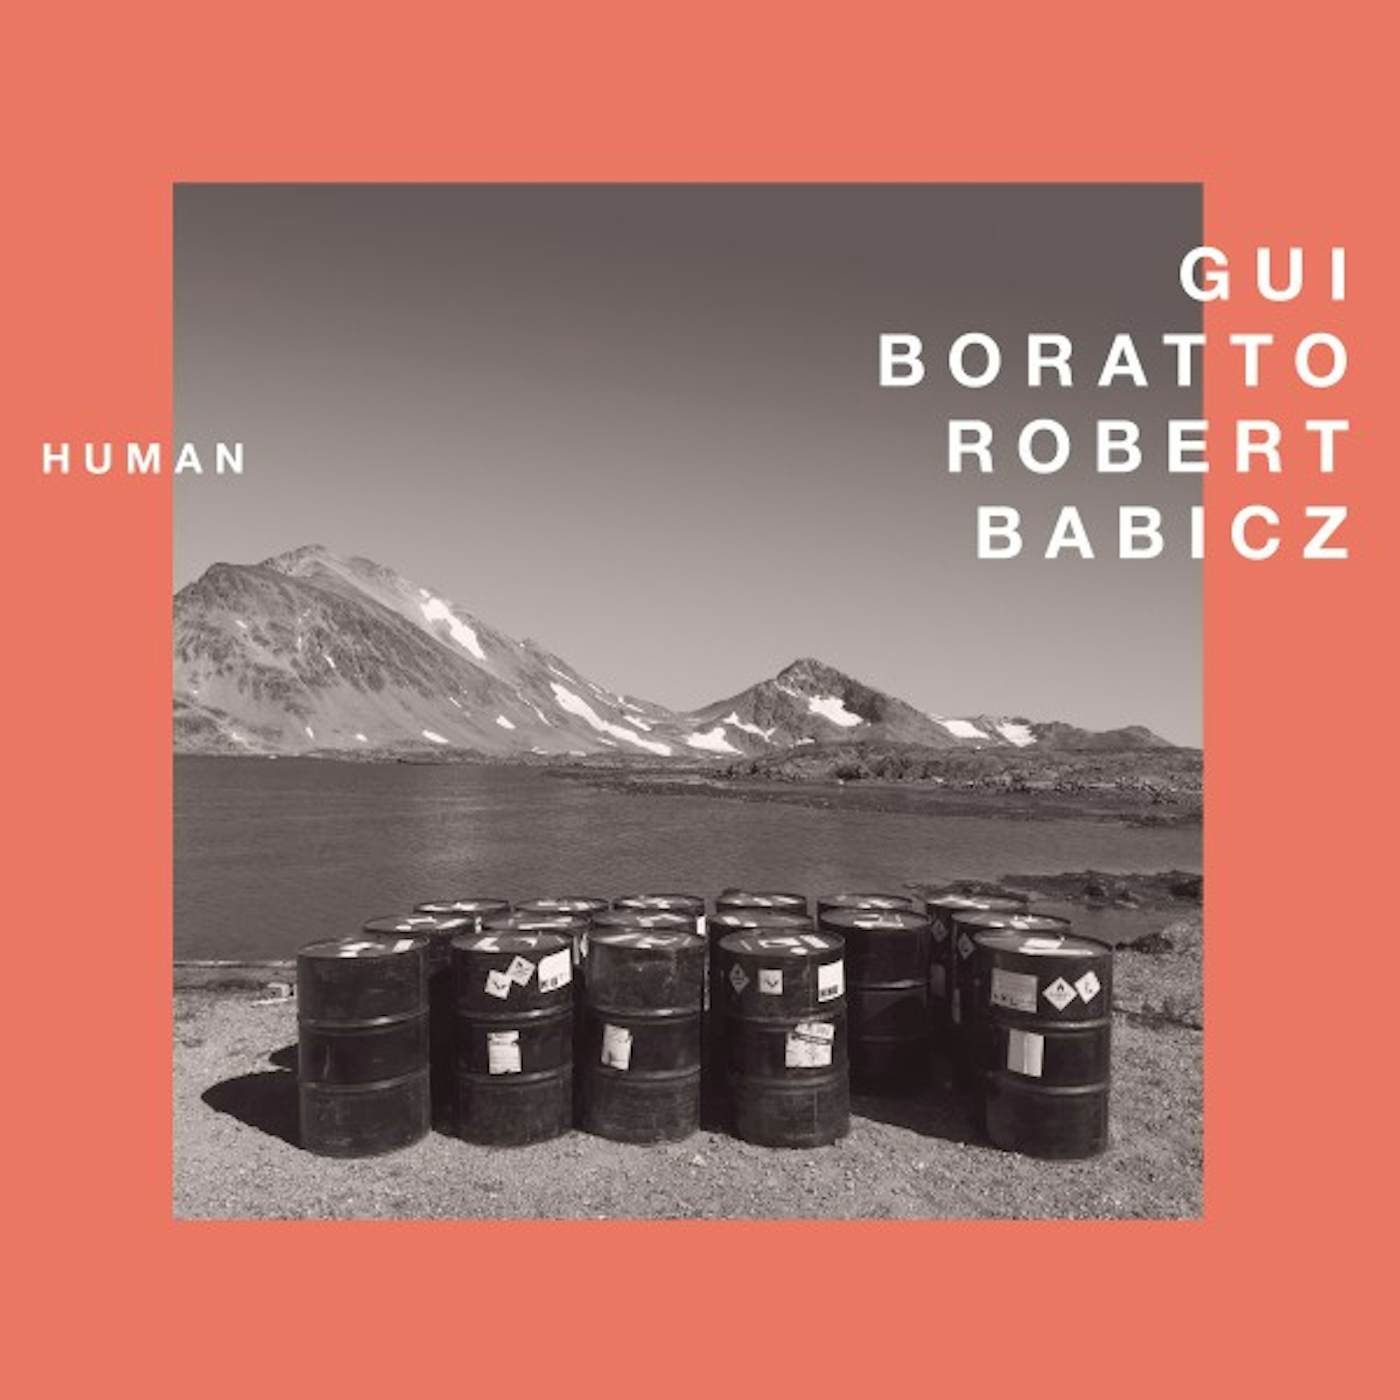 Gui Boratto Human Vinyl Record